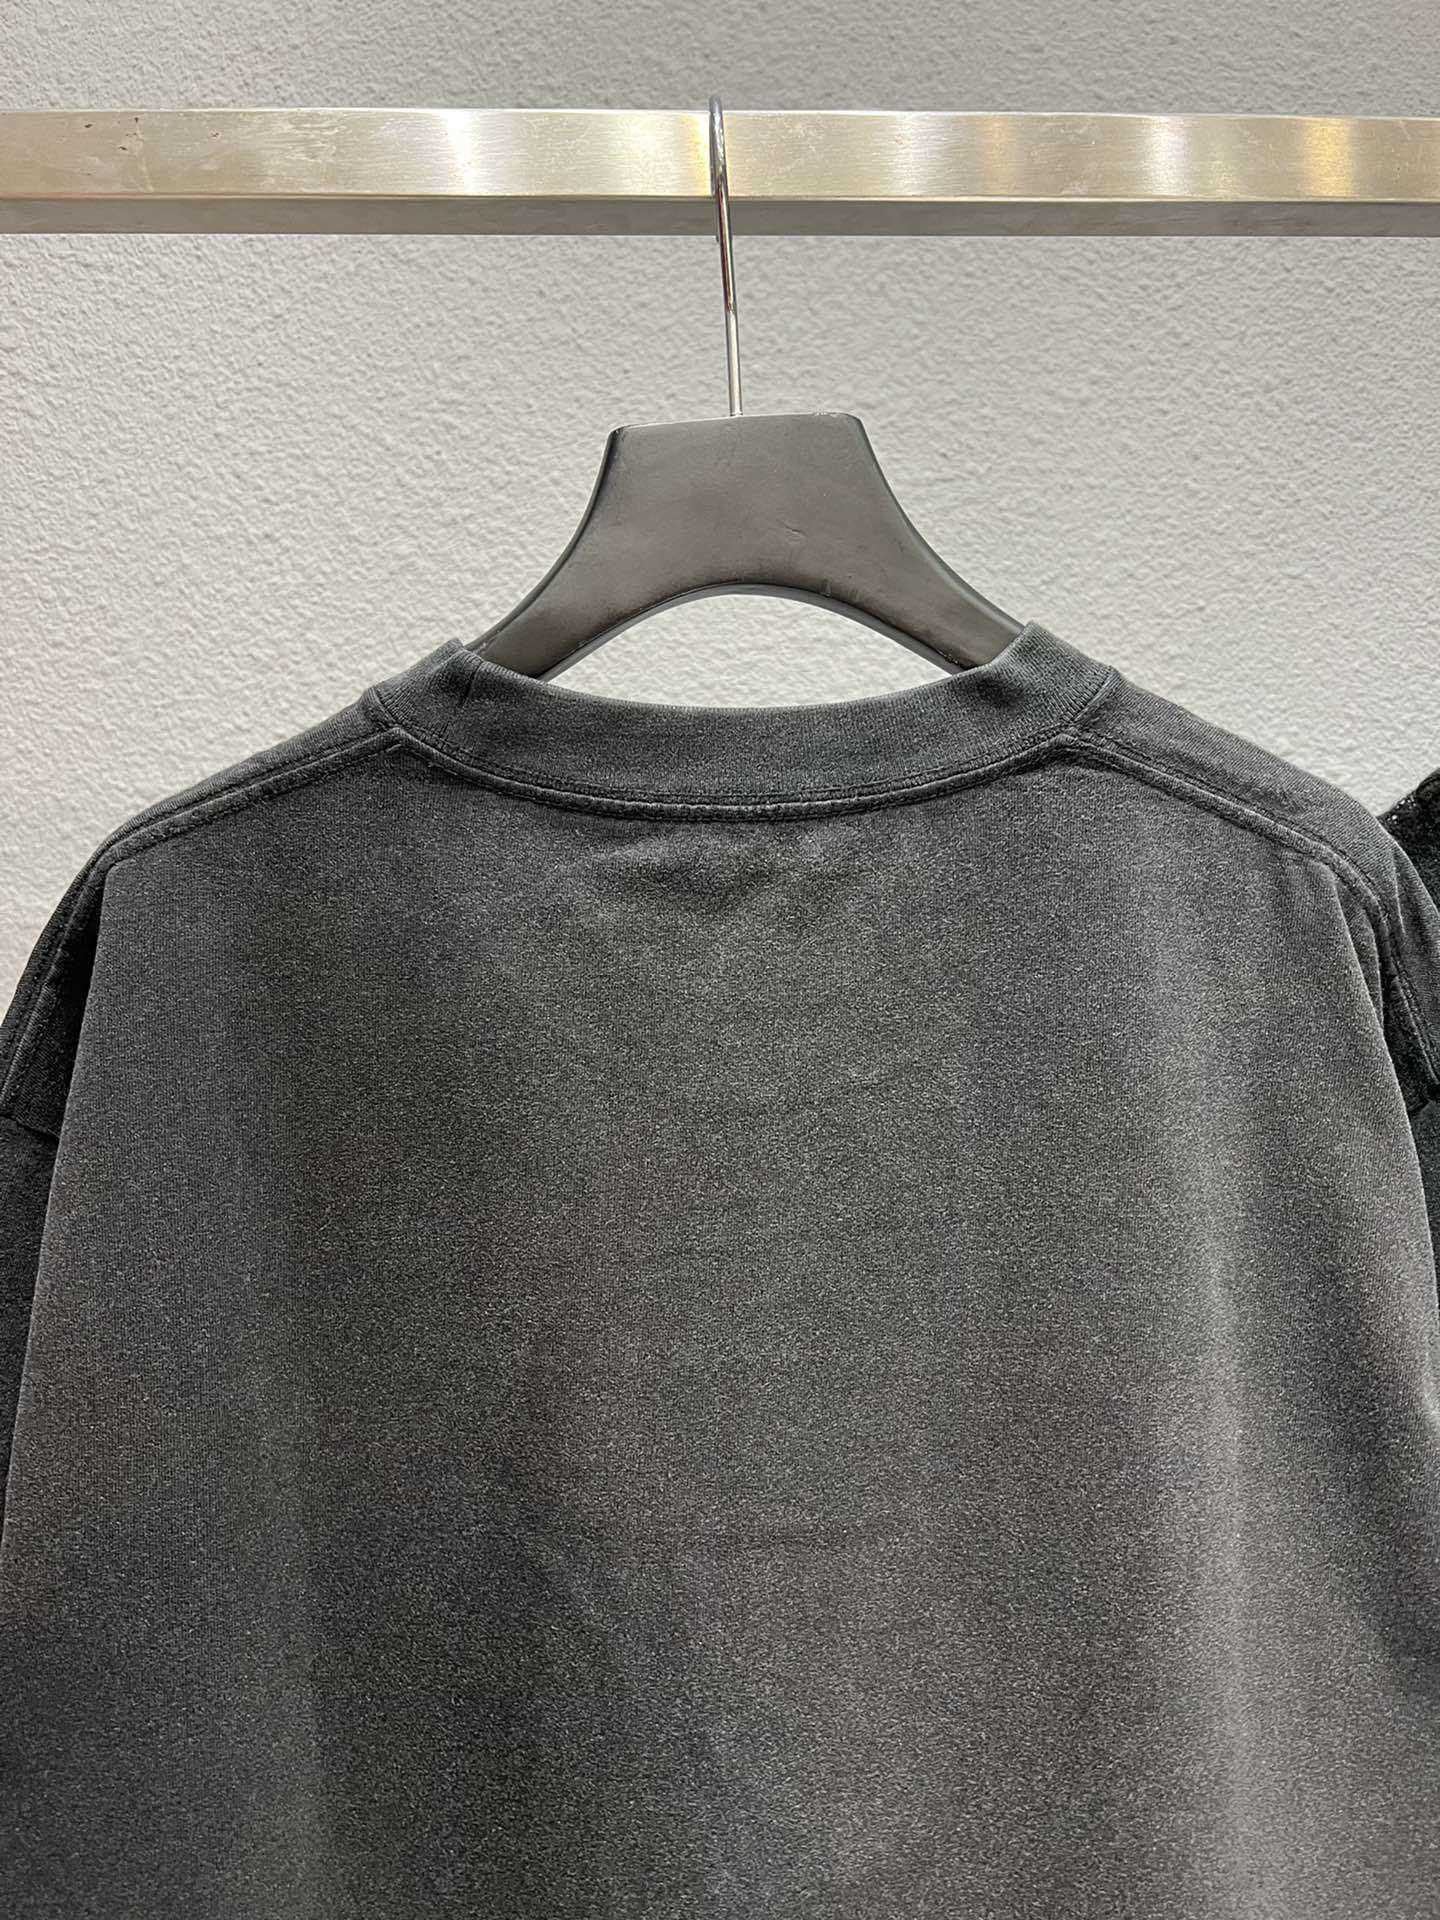 디자이너 여름 여자 T 셔츠 셔츠 크로 셰 뜨개질 자수의 올바른 버전 씻은 오래된 느슨한 피팅 커플의 슬리브 티셔츠